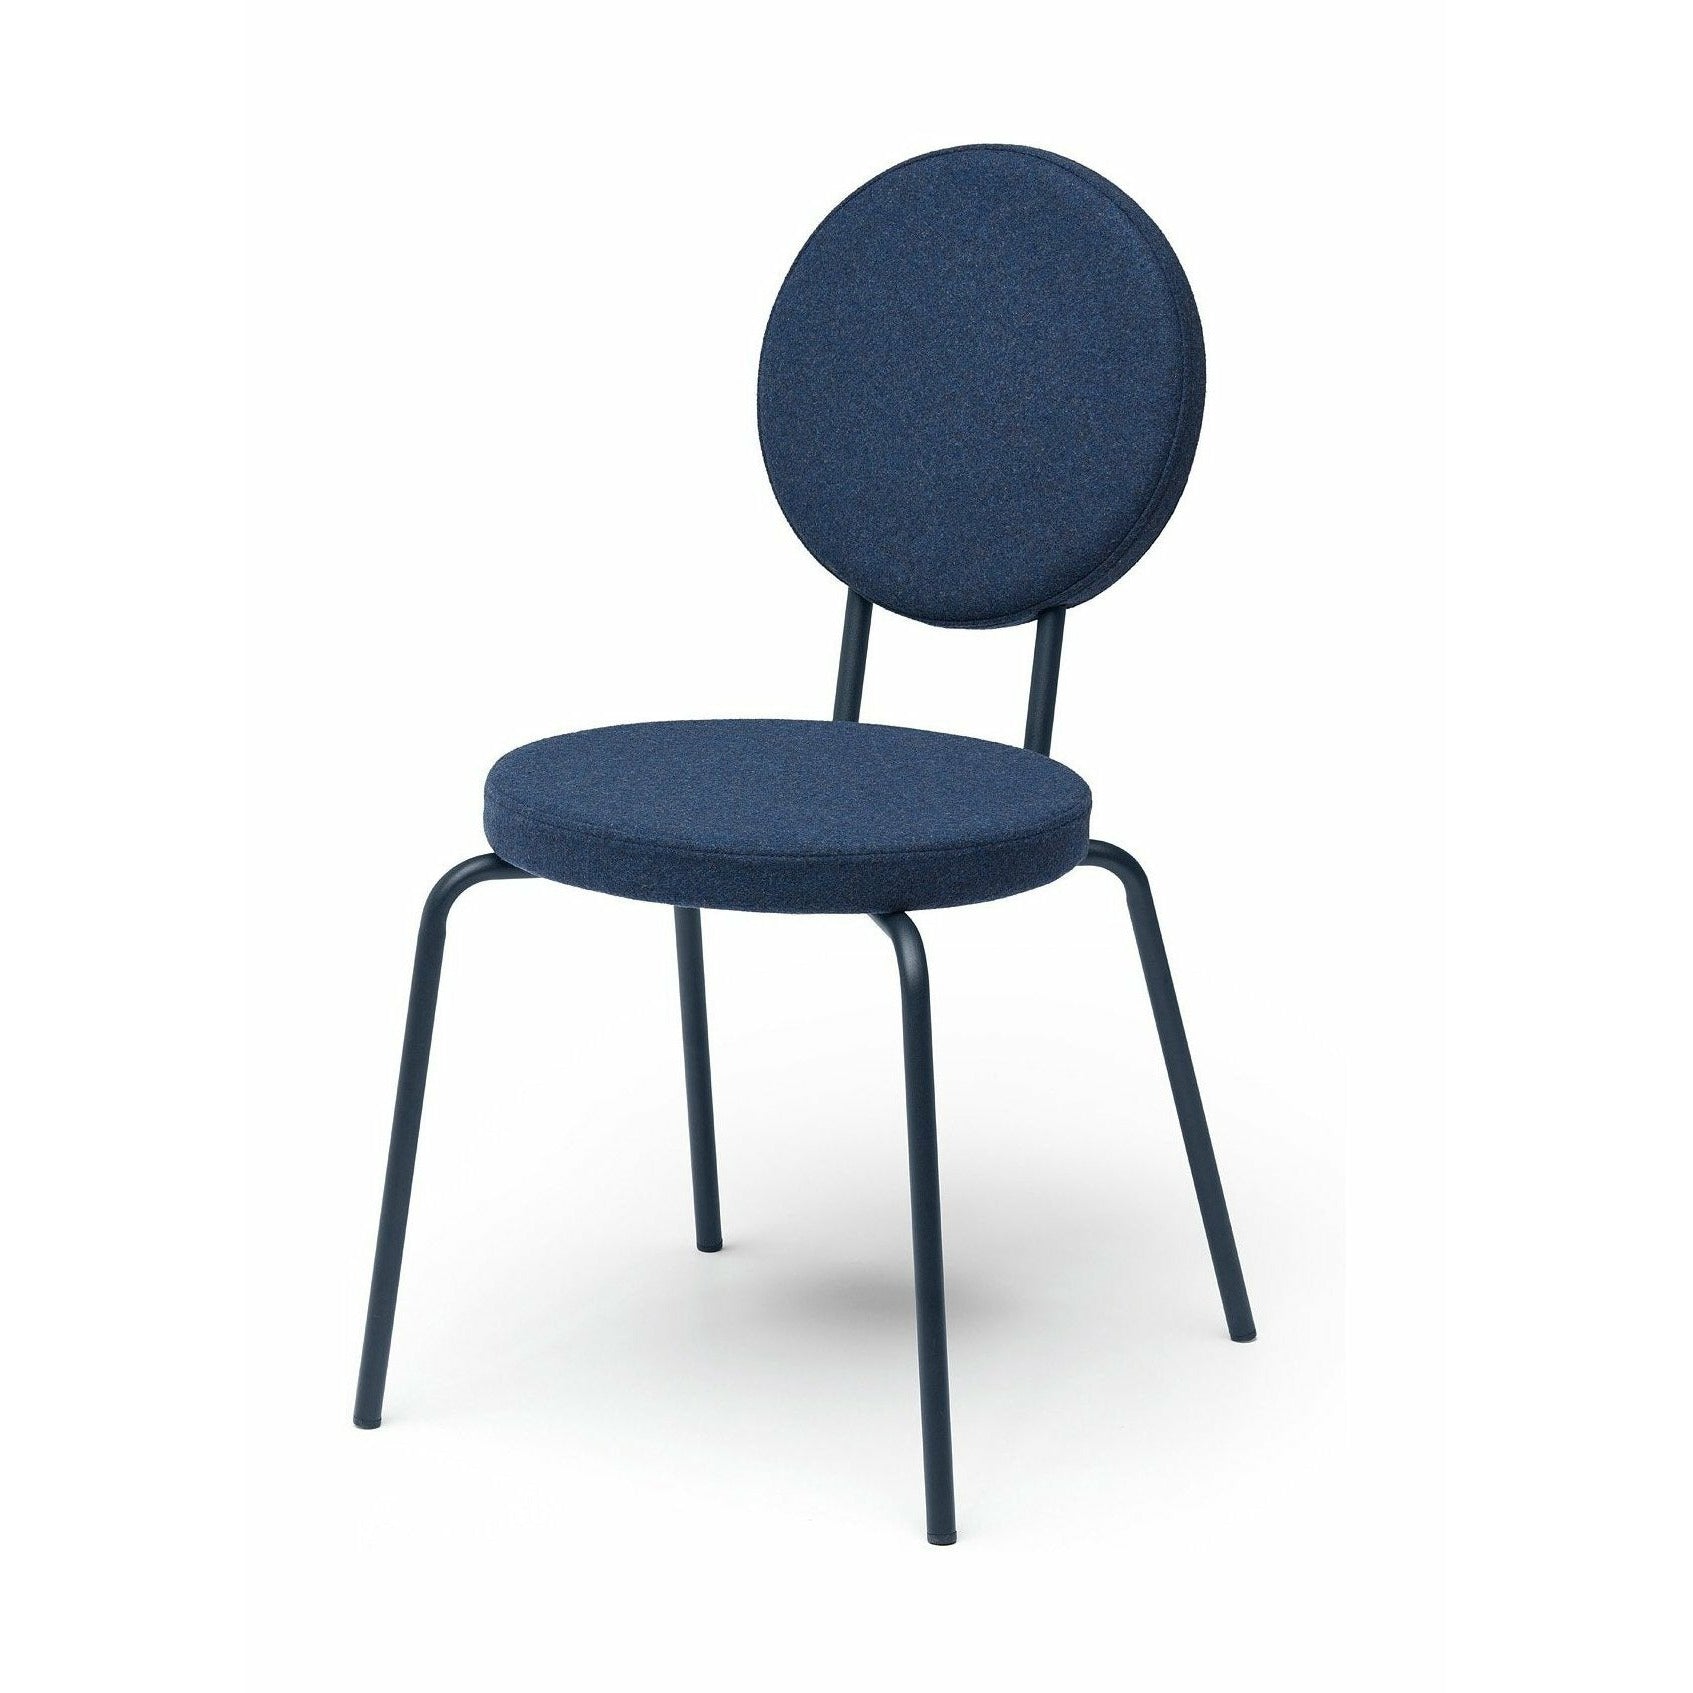 Puik Option Chair Seat And Backrest Round, Dark Blue